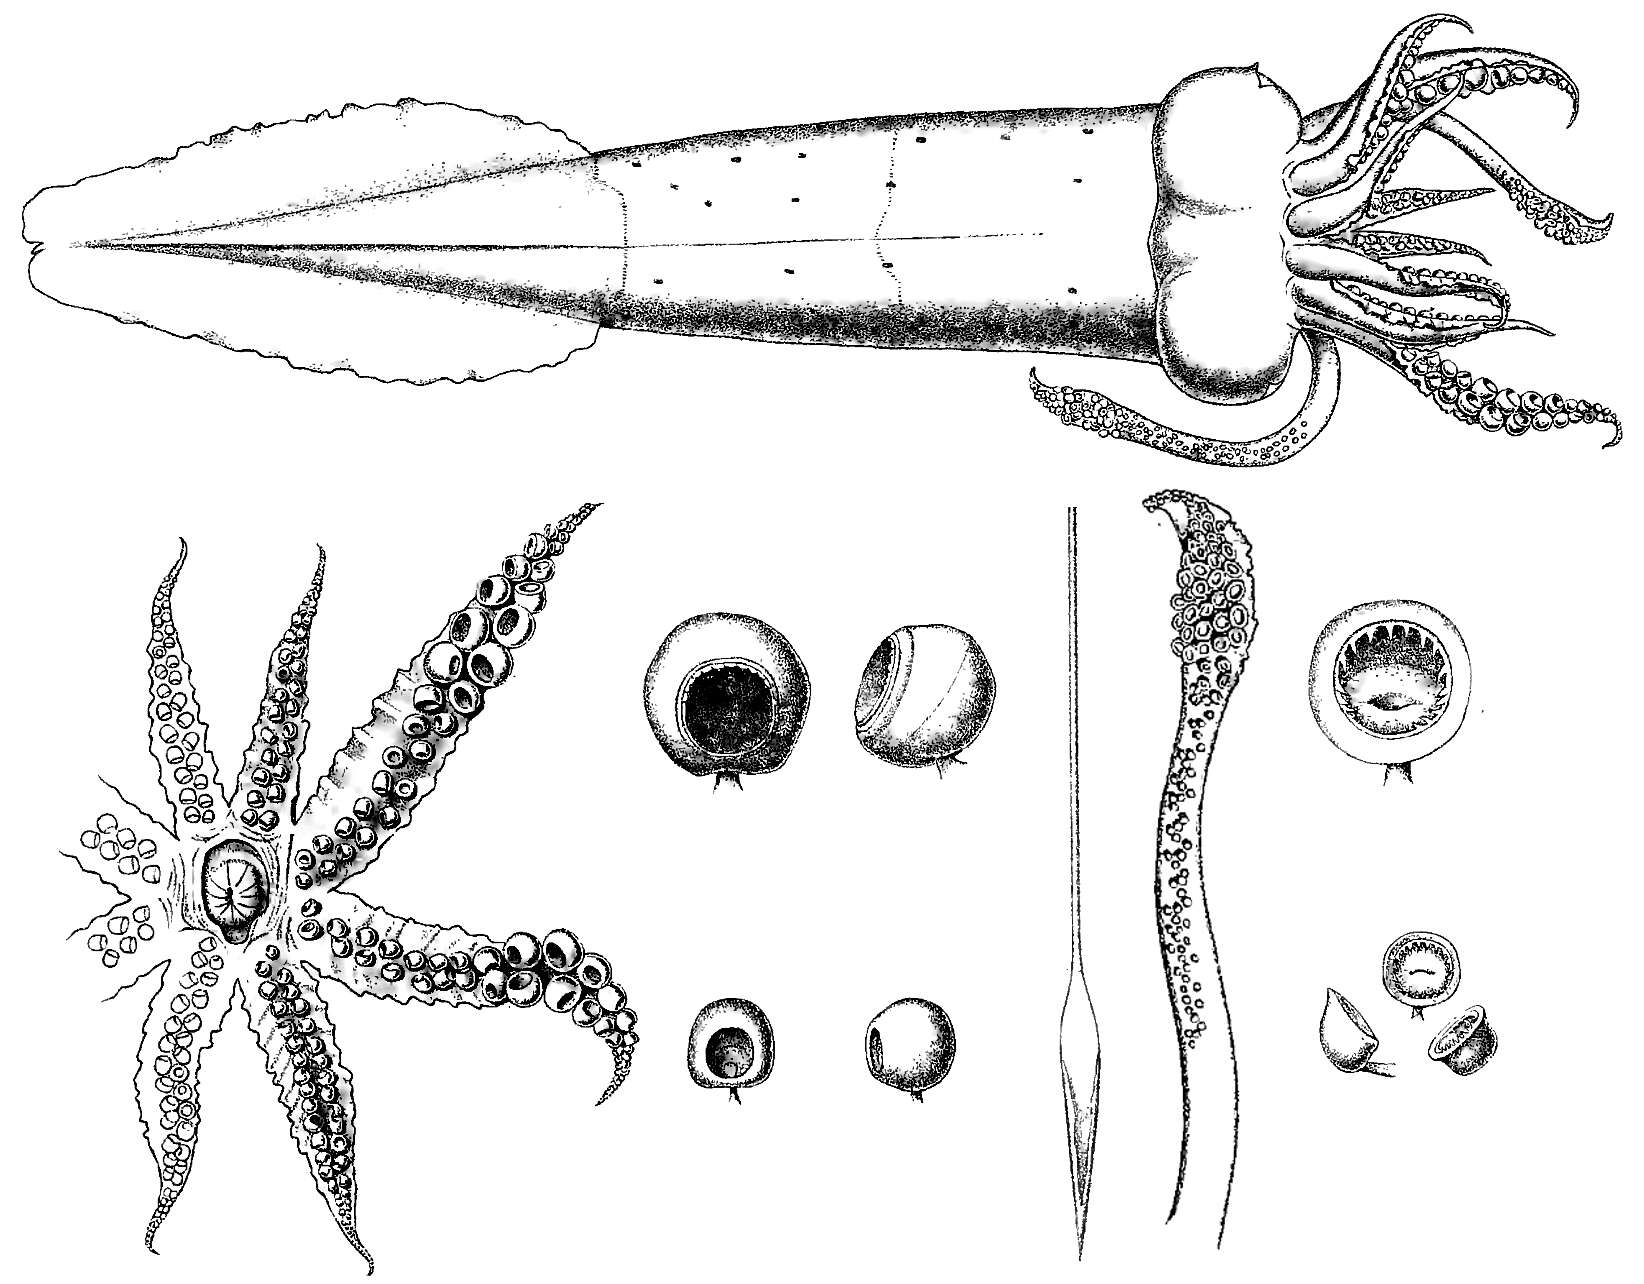 Image of Atlantic cranch squid